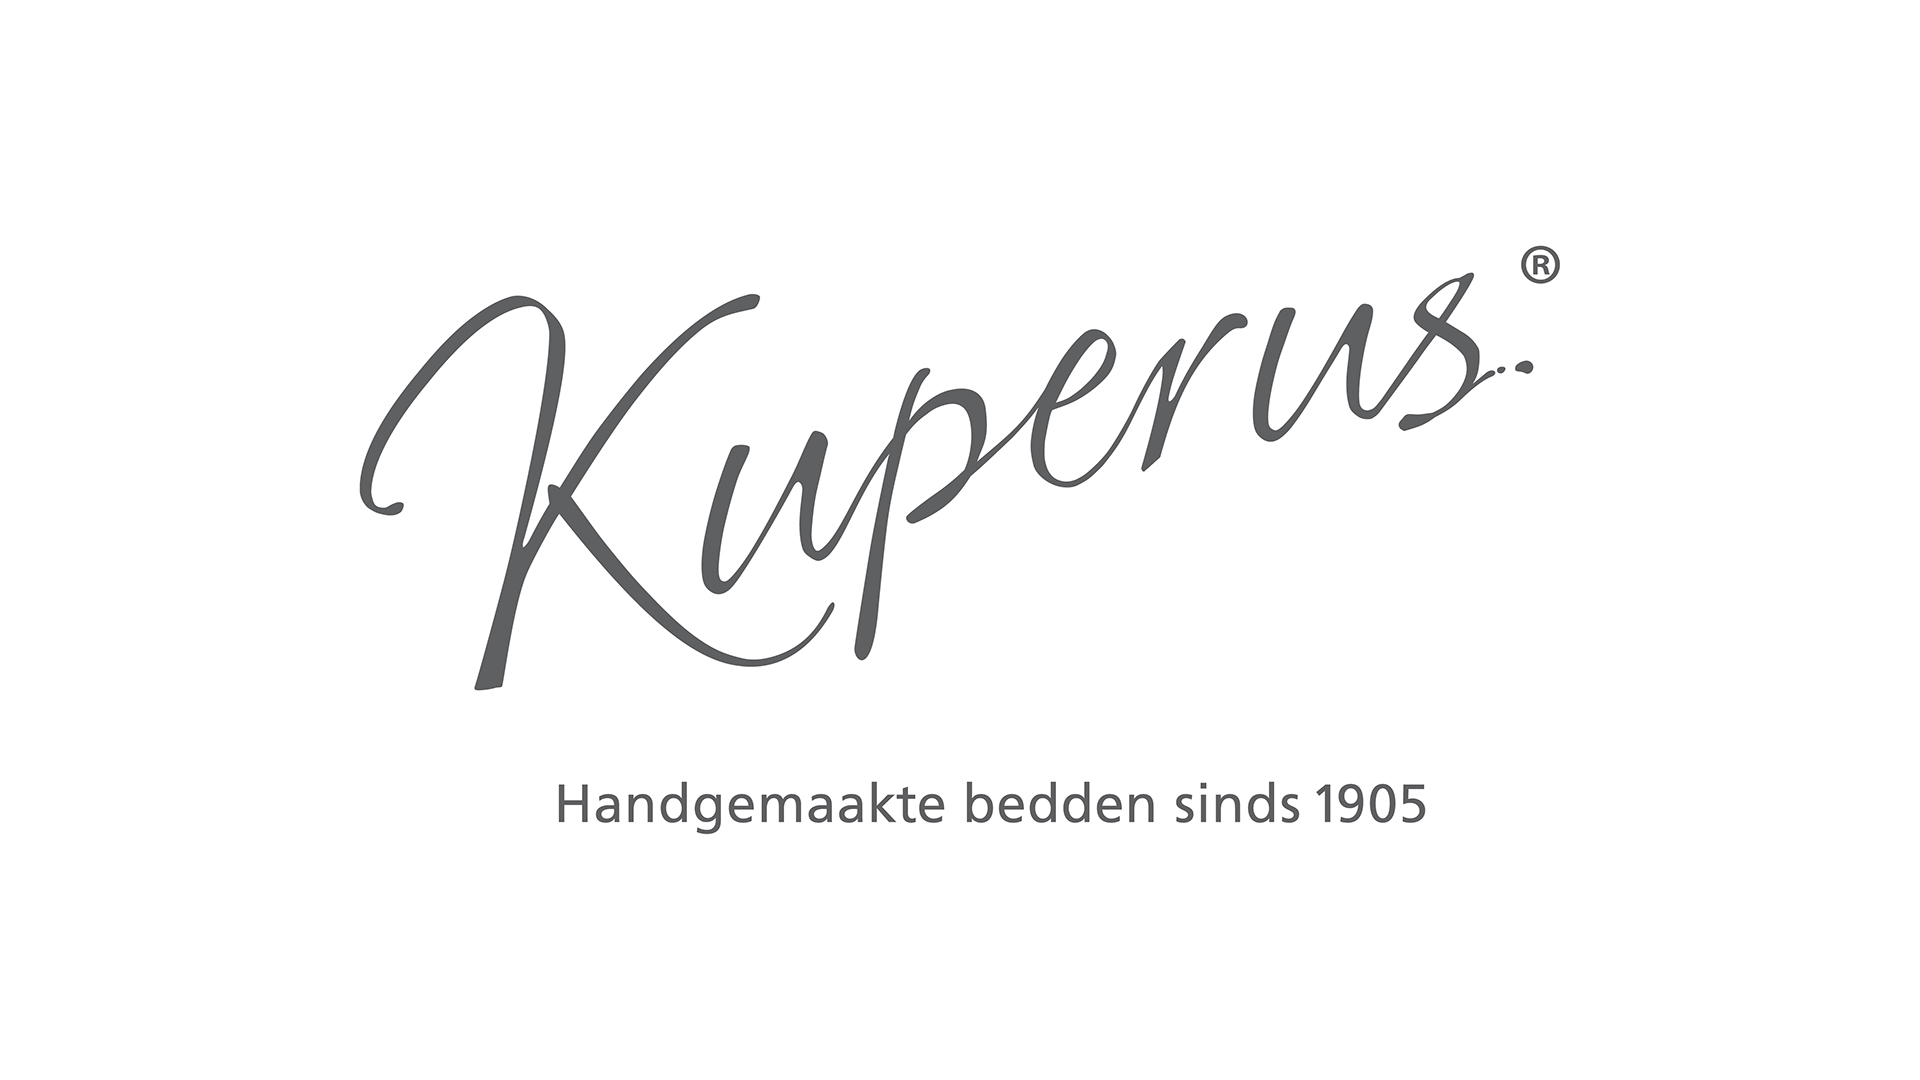 001-merken/kuperus/logos/kuperus_00.jpg